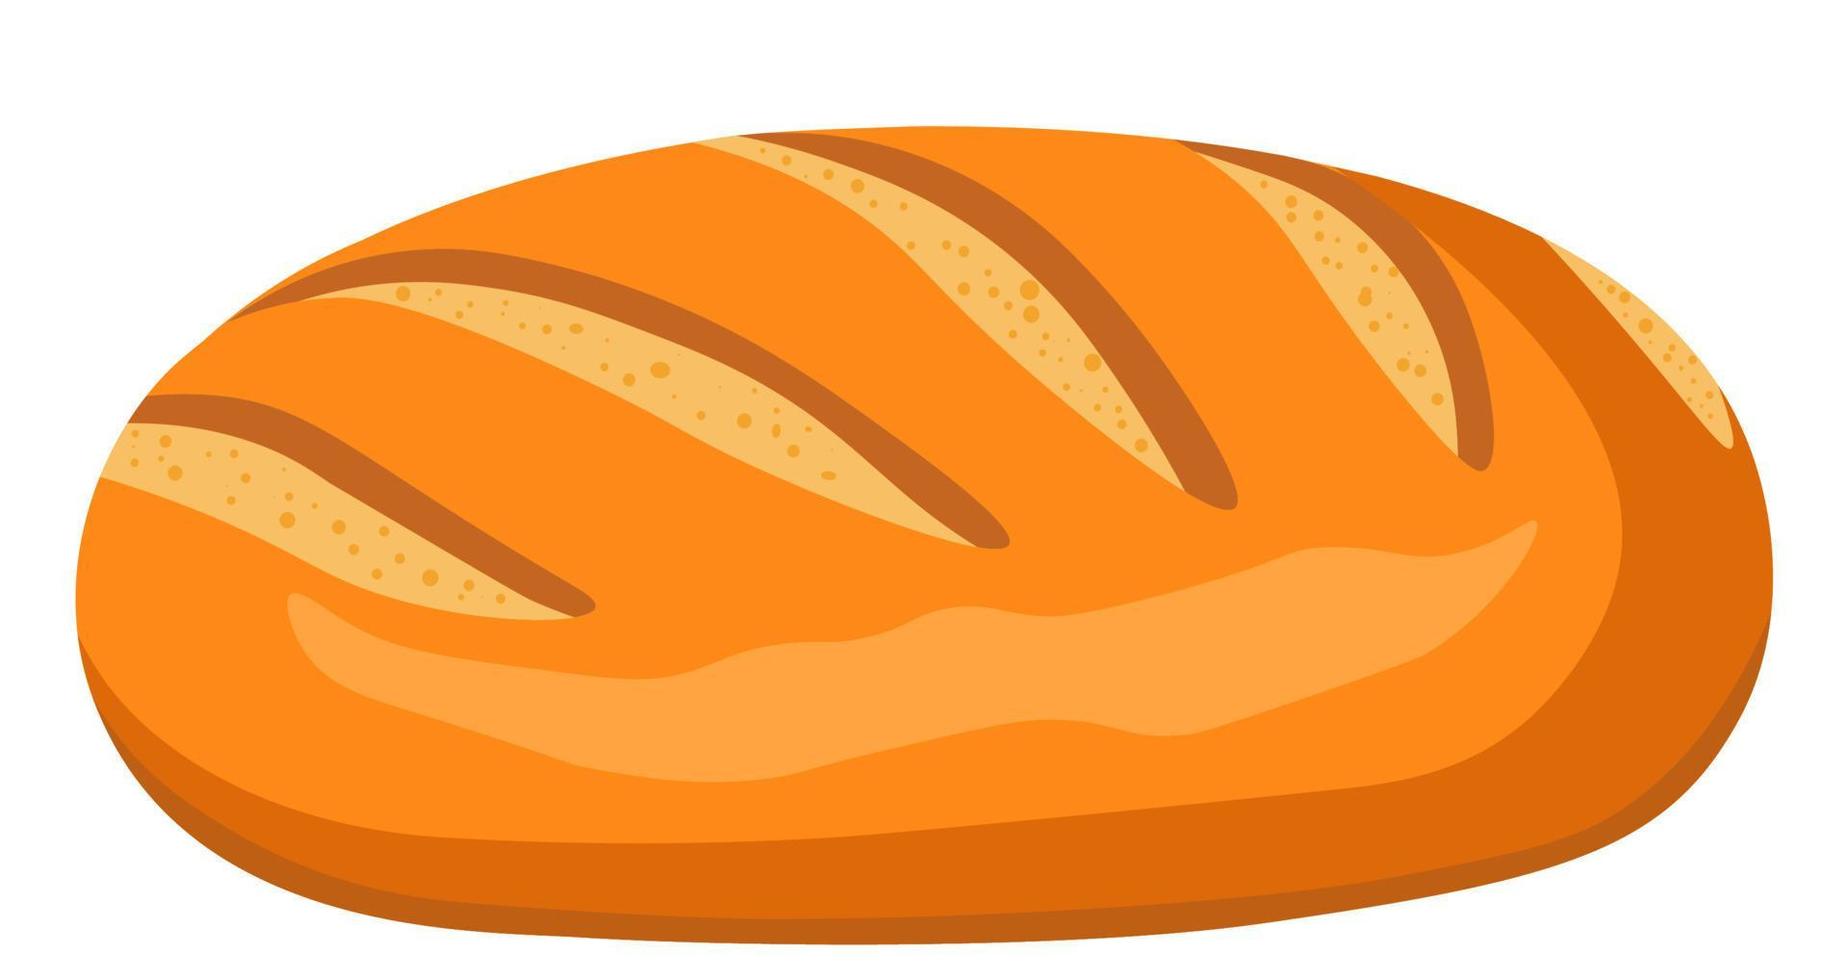 miche de pain fraîchement cuite, pâtisserie et nutrition vecteur